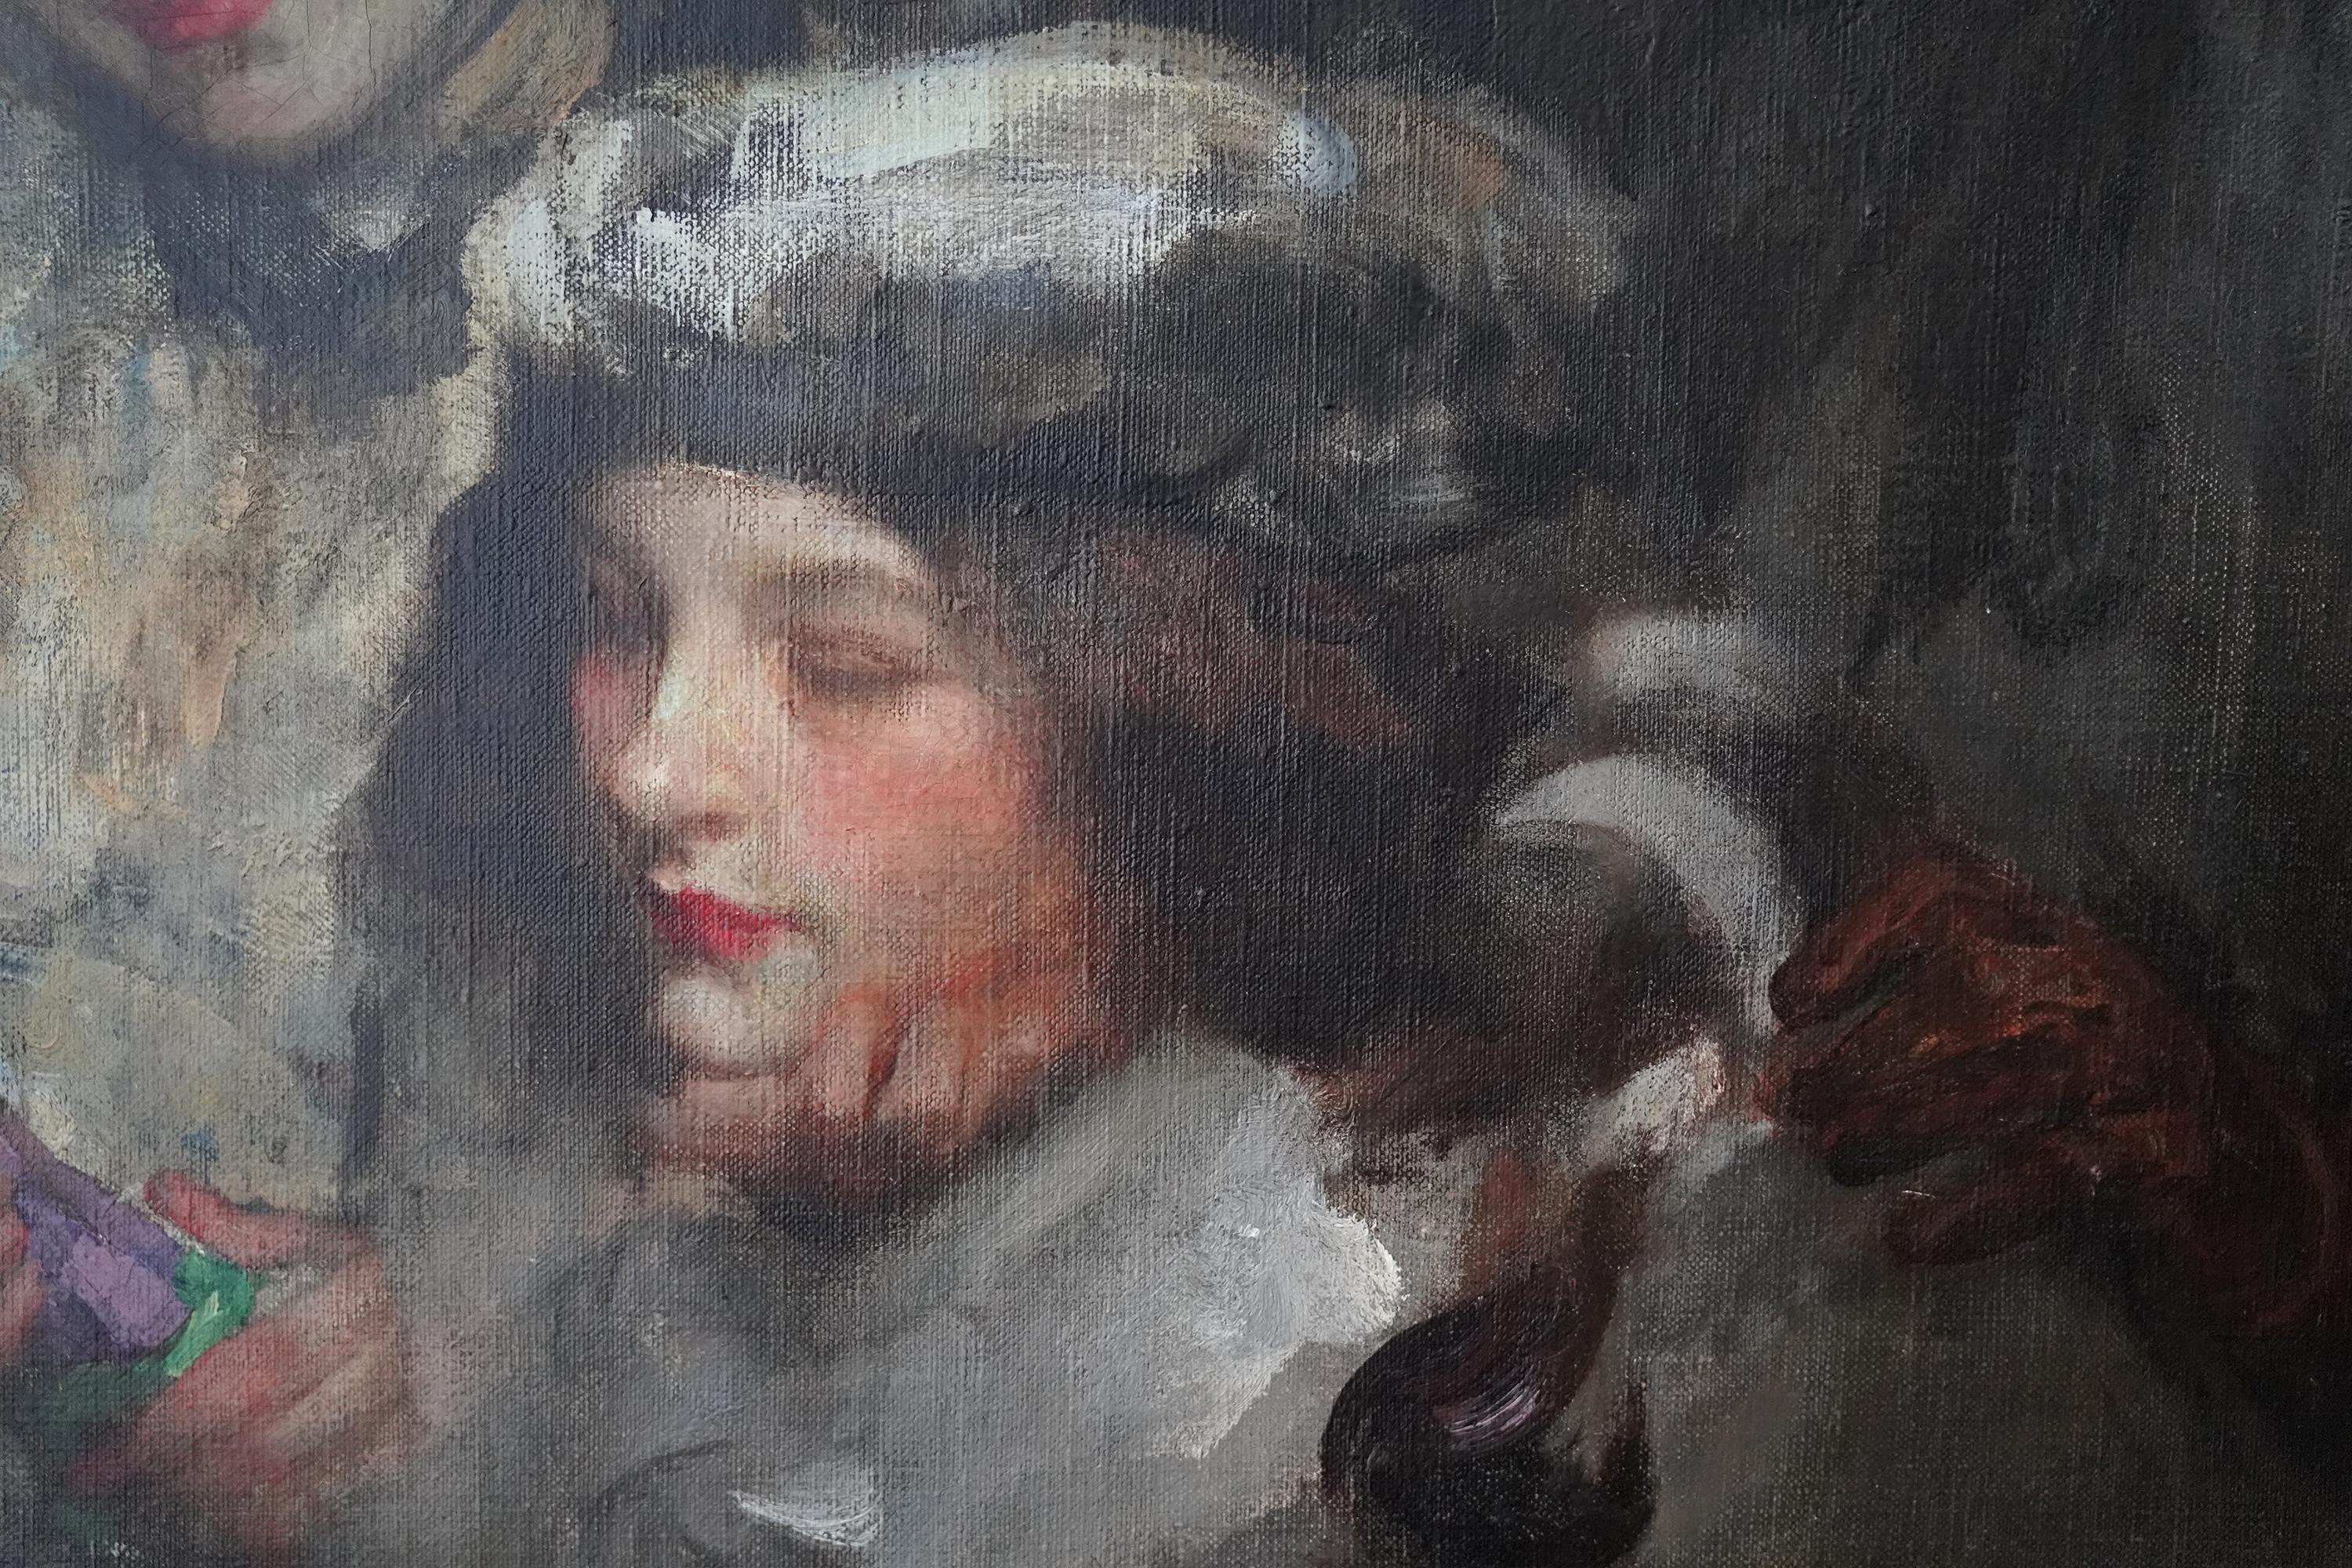 Ce superbe portrait impressionniste britannique sur toile est une œuvre de Sir James Jebusa Shannon datant d'environ 1905. Le tableau représente l'artiste, sa femme Florence et sa fille Kitty. Shannon a réalisé de nombreux portraits superbes,